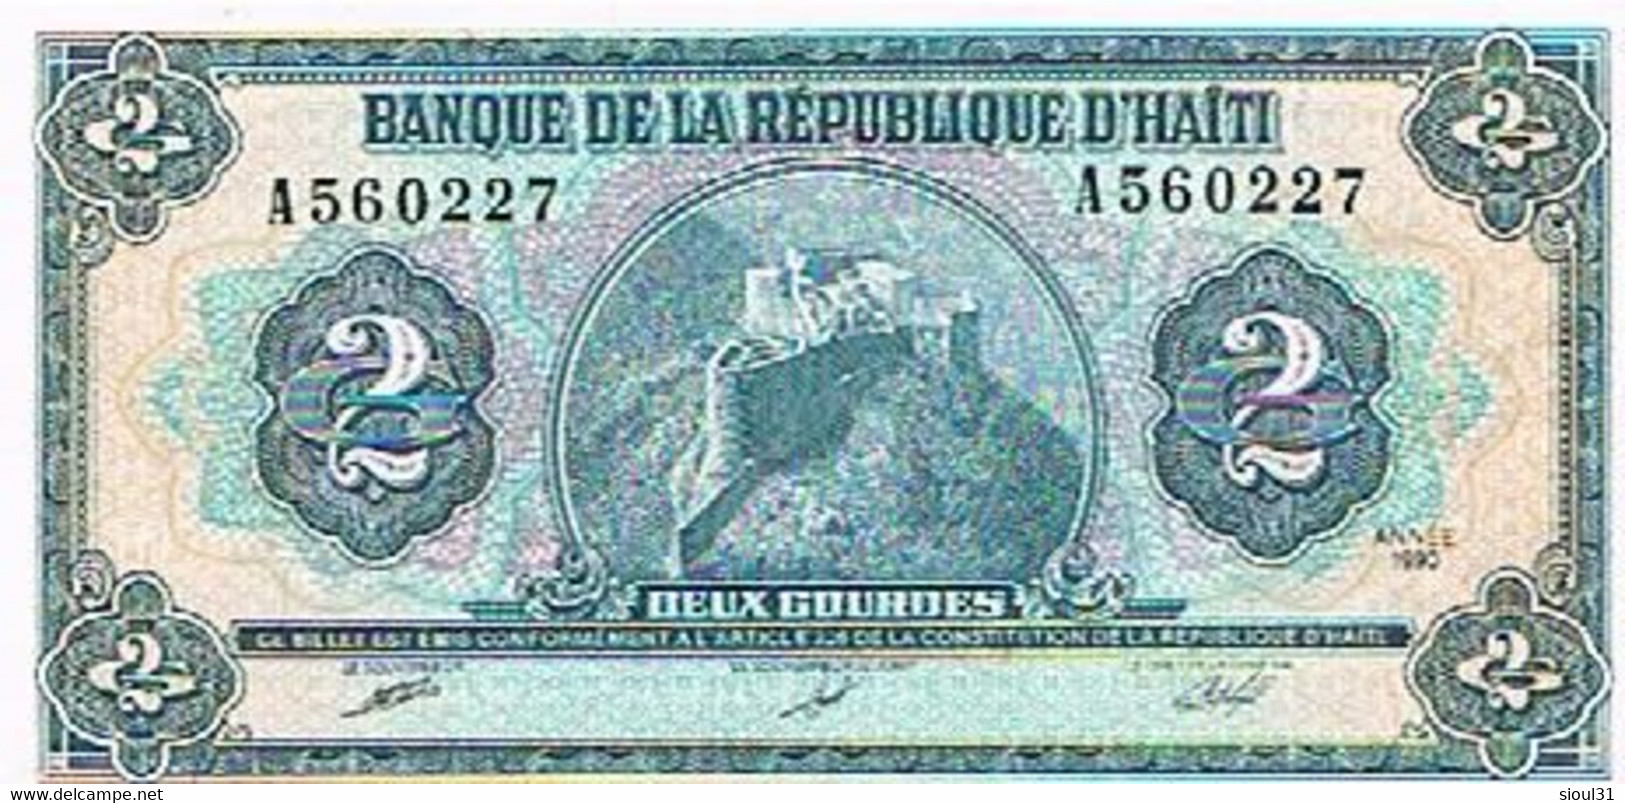 BANQUE  DE LA REPUBLIQUE  D 'HAITI  BILLET  2 GOURDES 1990     N°A560227                              BI17 - Haiti